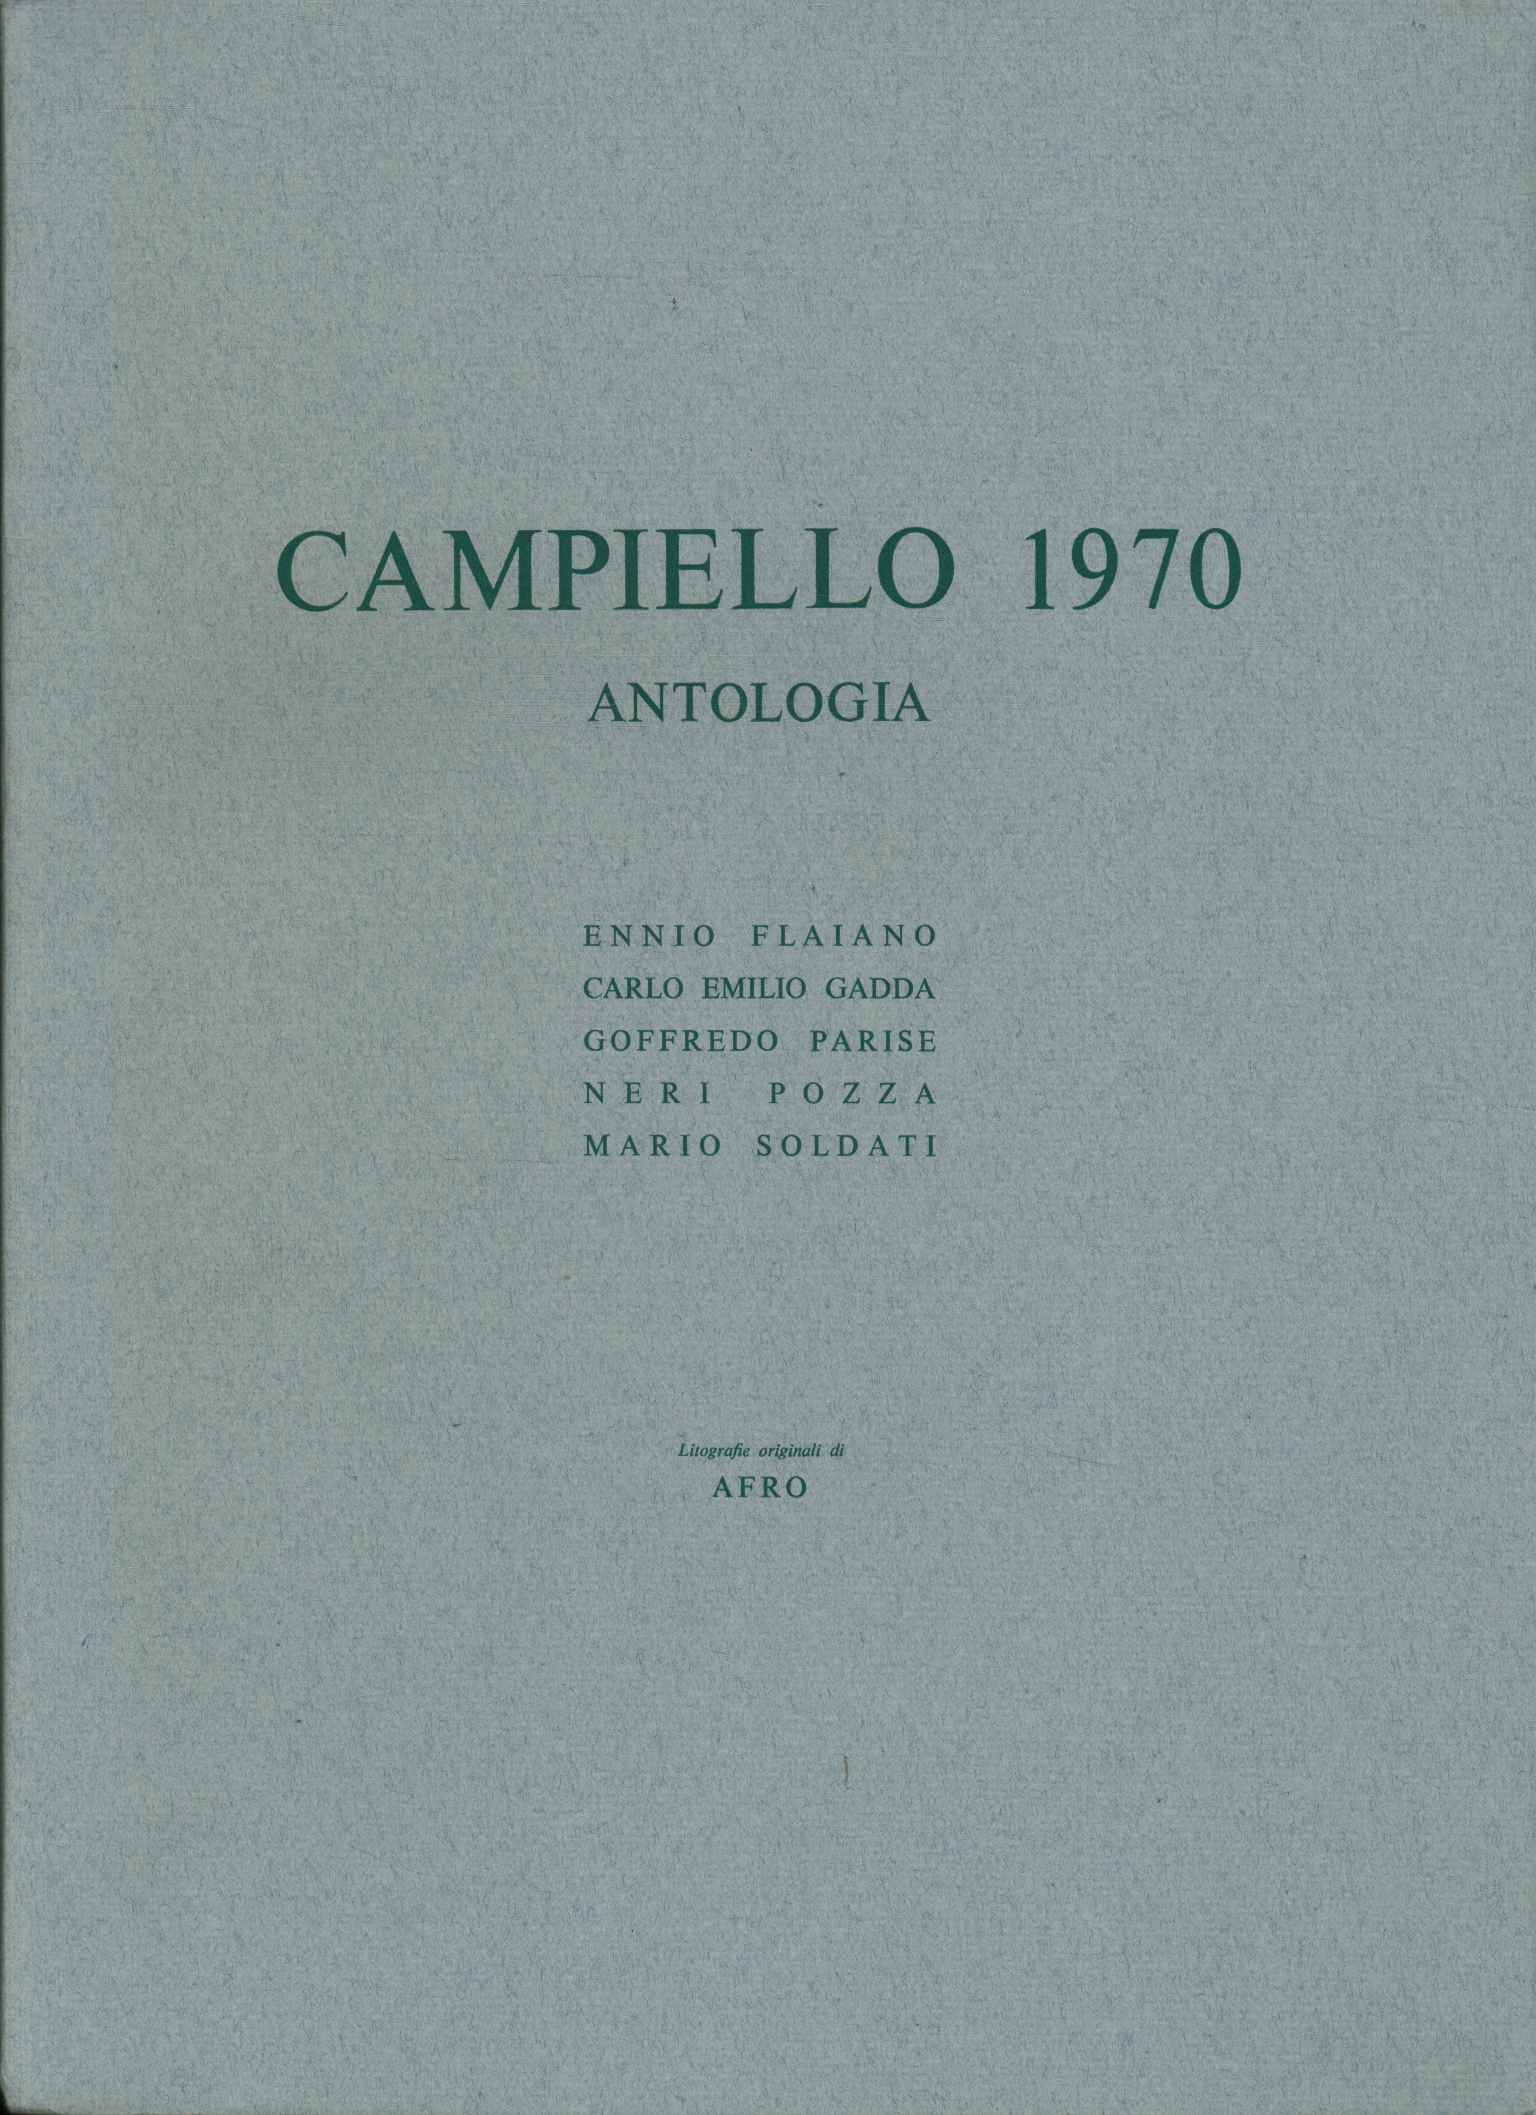 Anthologie von Campiello 1970